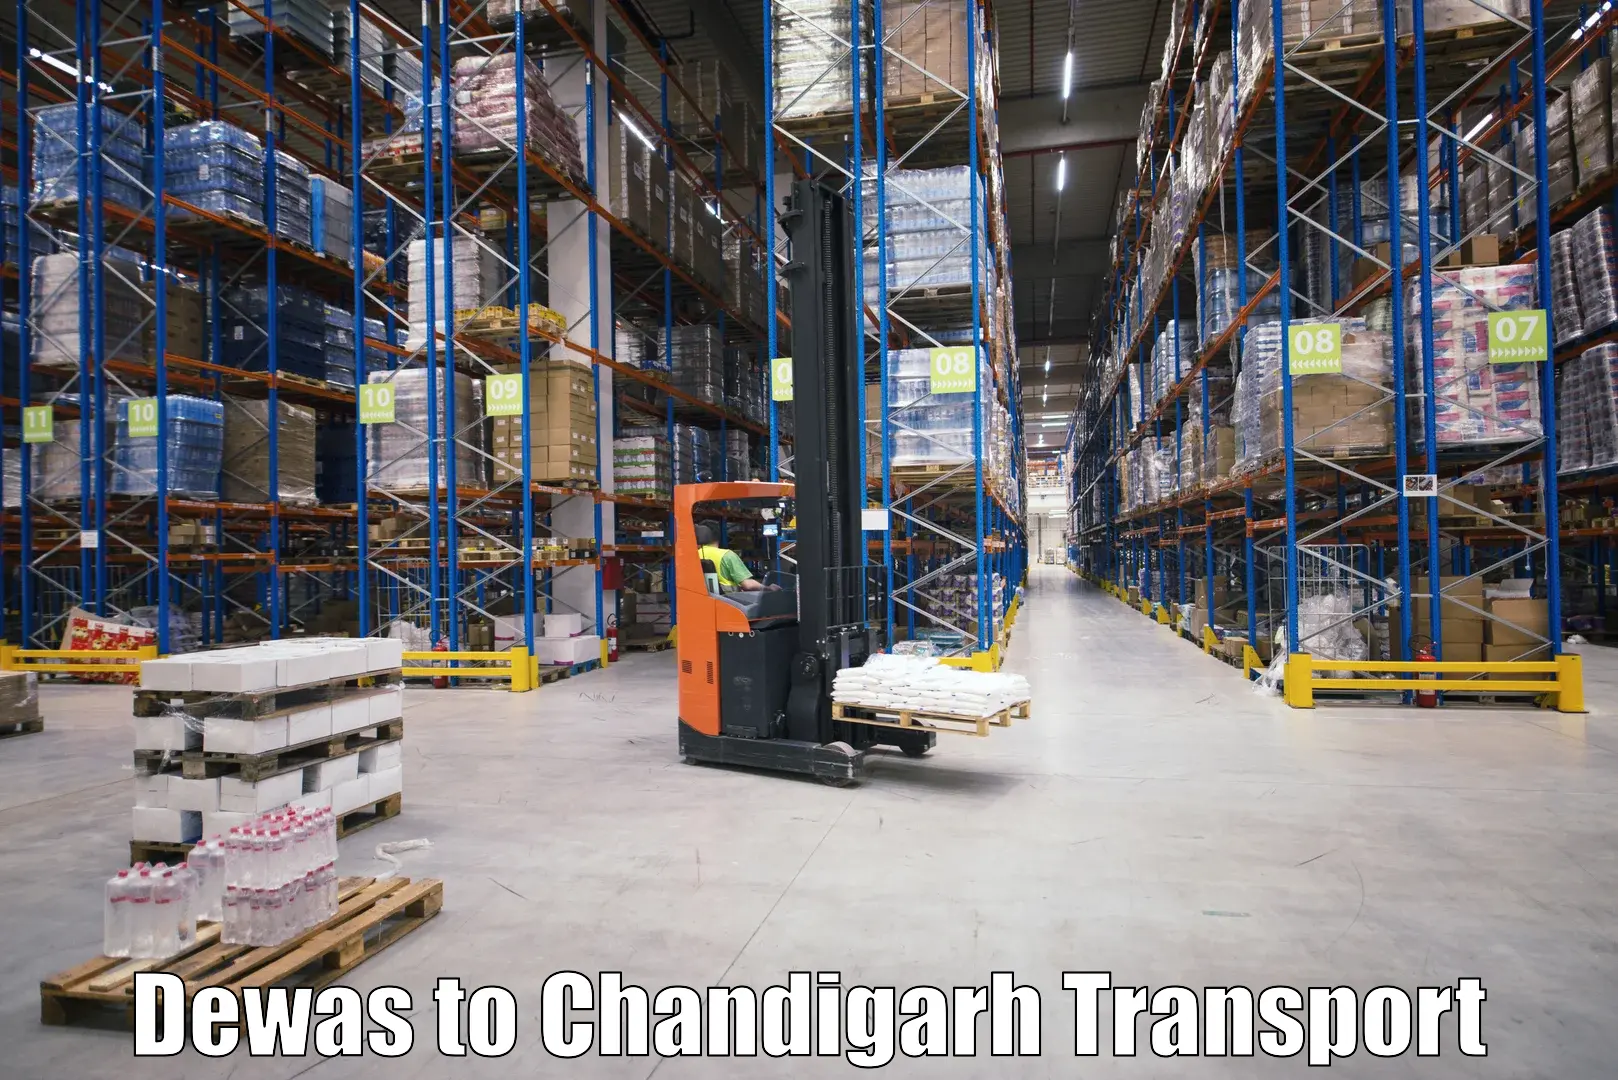 Land transport services Dewas to Chandigarh